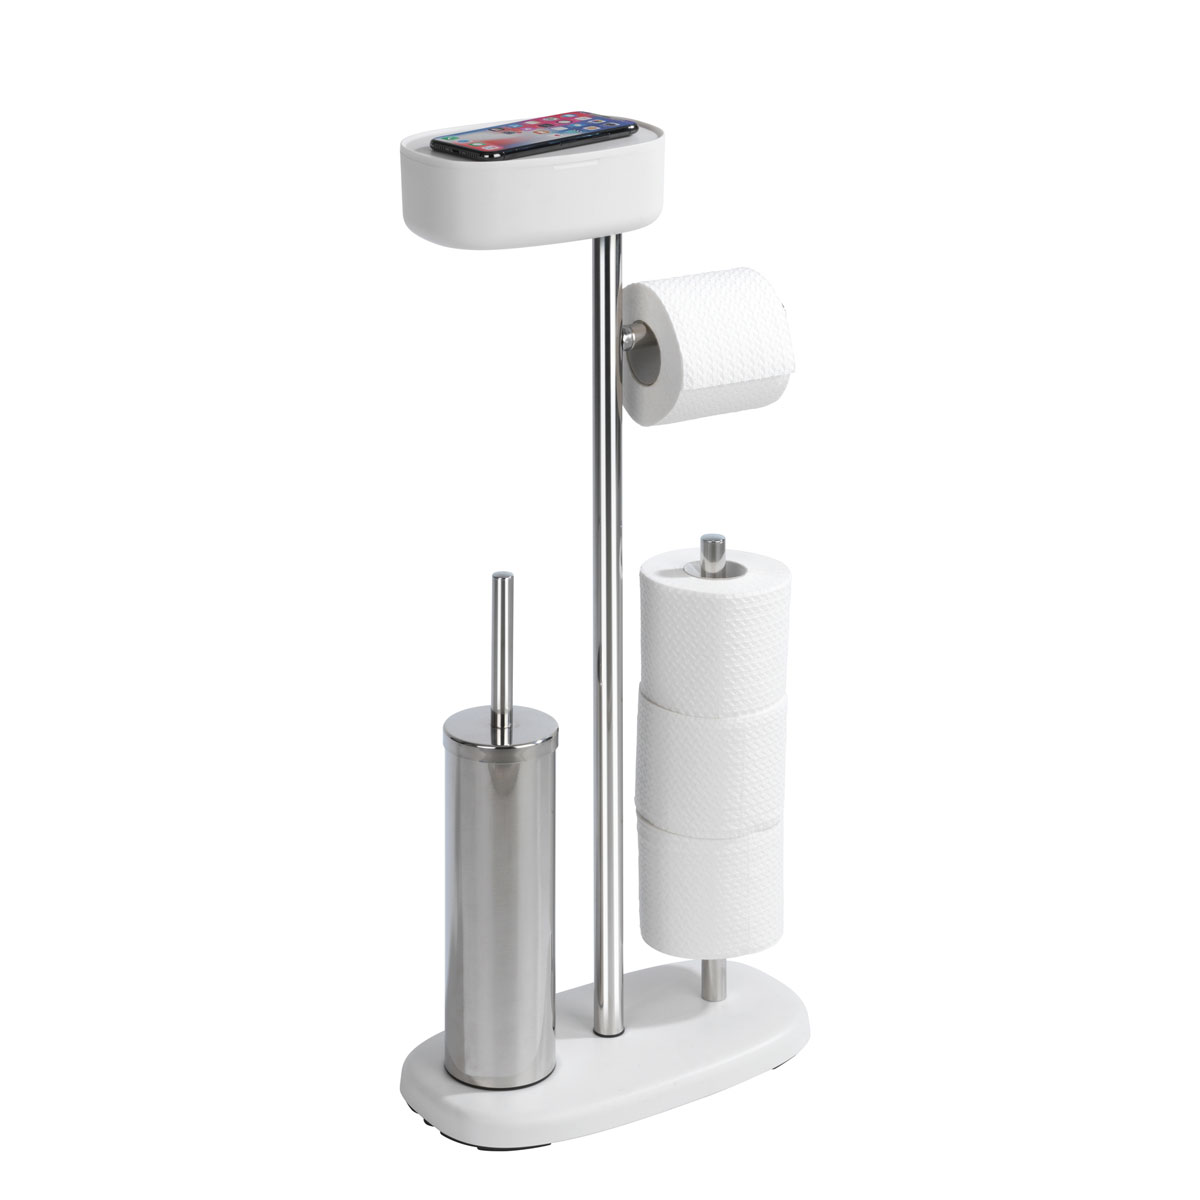 Wenko Stand WC-Garnitur mit Box Rivazza Weiß integrierter  Toilettenpapierhalter Ersatzrollenhalter und WC-Bürstenhalter mit Ablagebox  | 514827